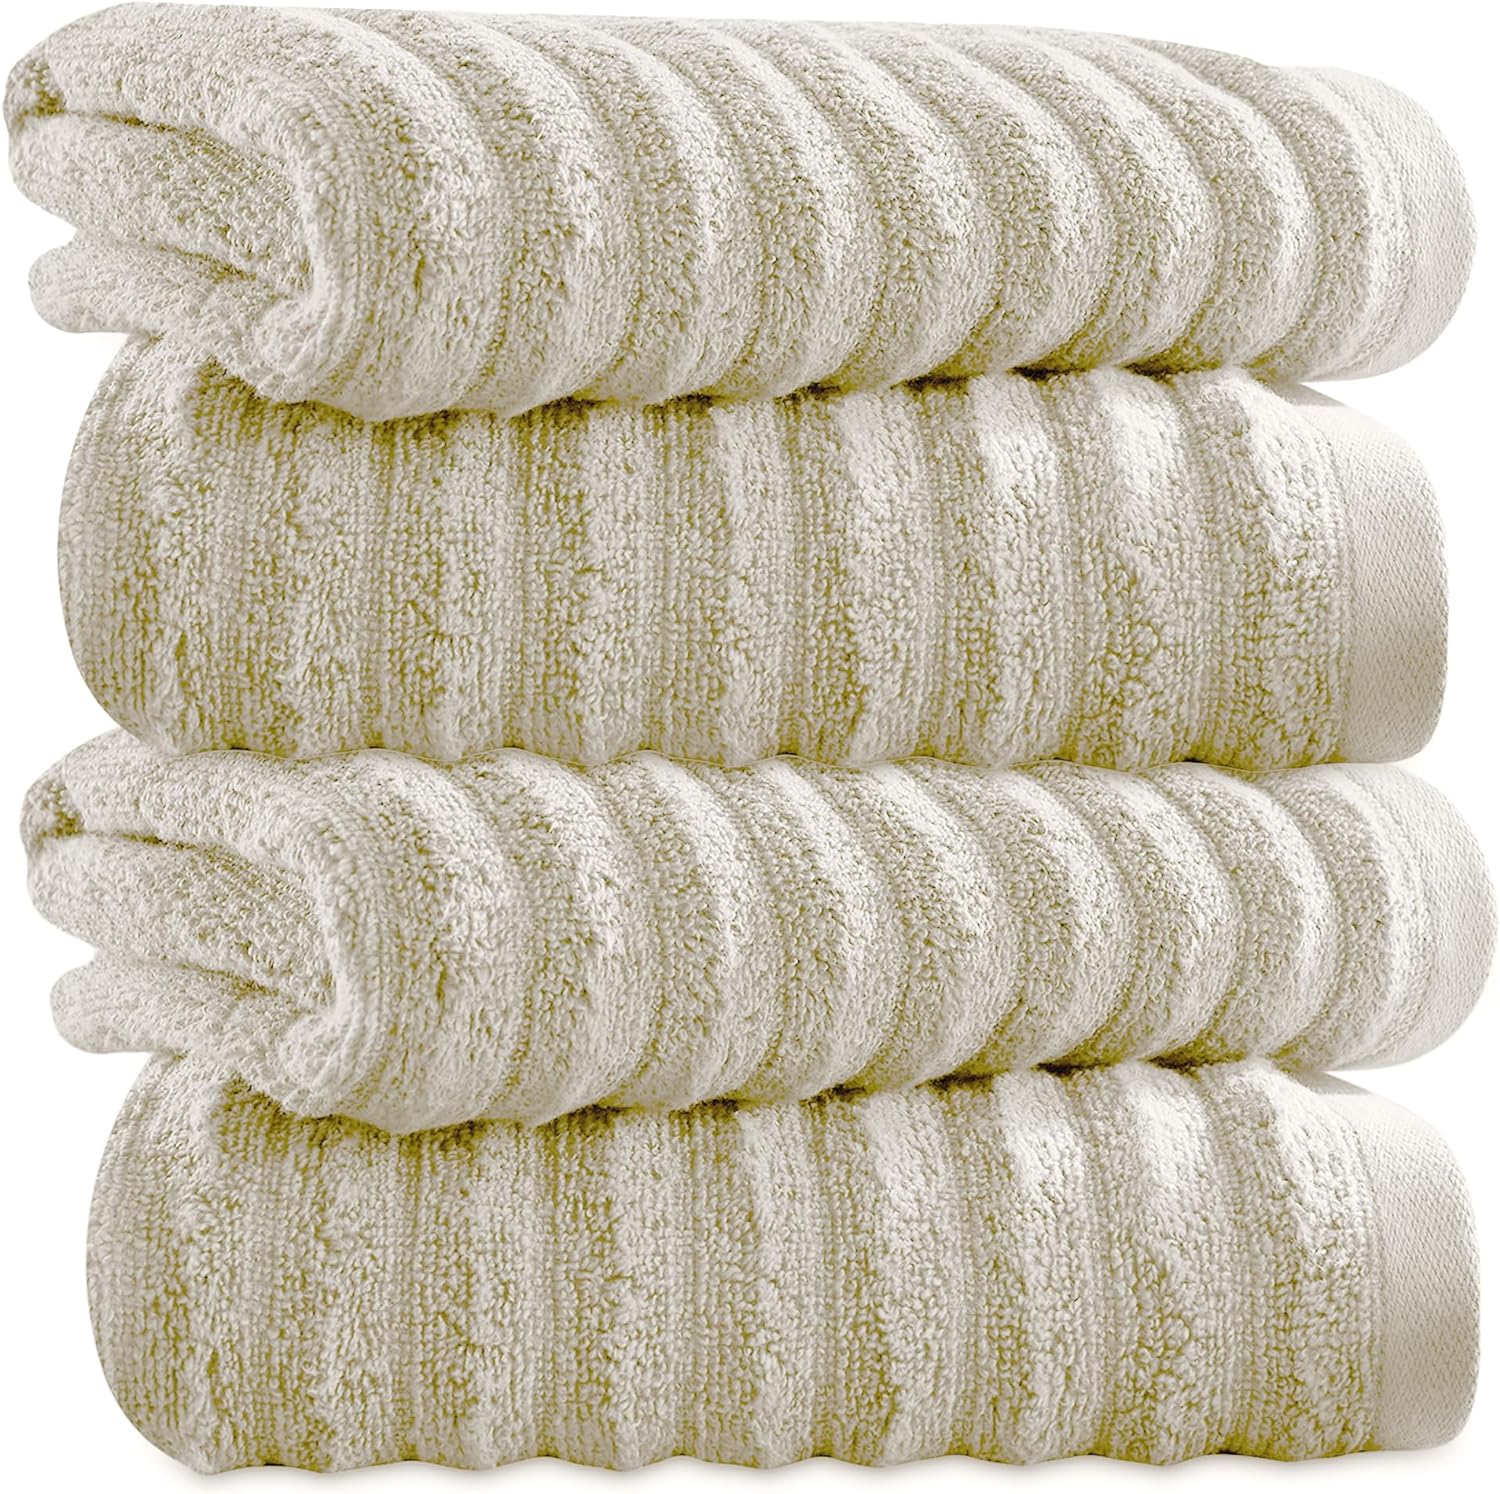 Cotton-Luxury-Bath-Towels